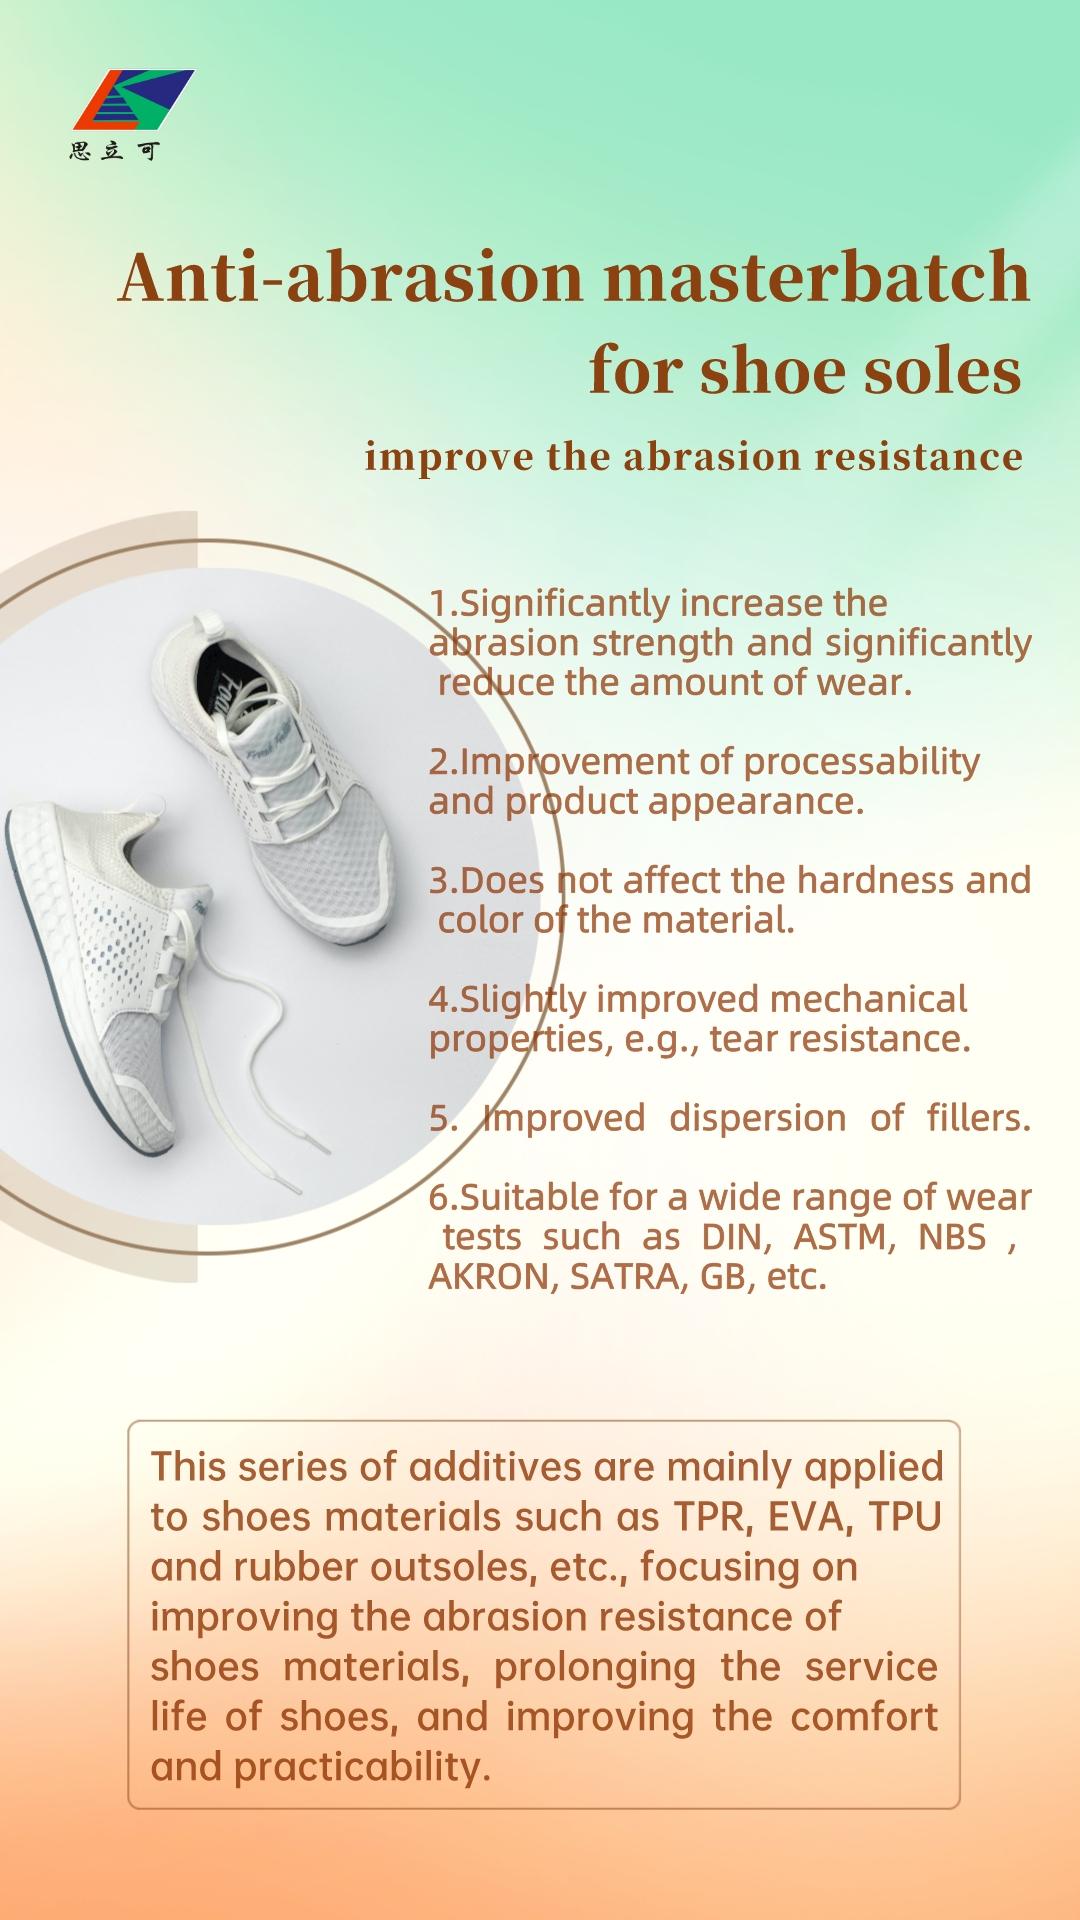 Cómo mejorar la resistencia a la abrasión de las suelas de los zapatos.